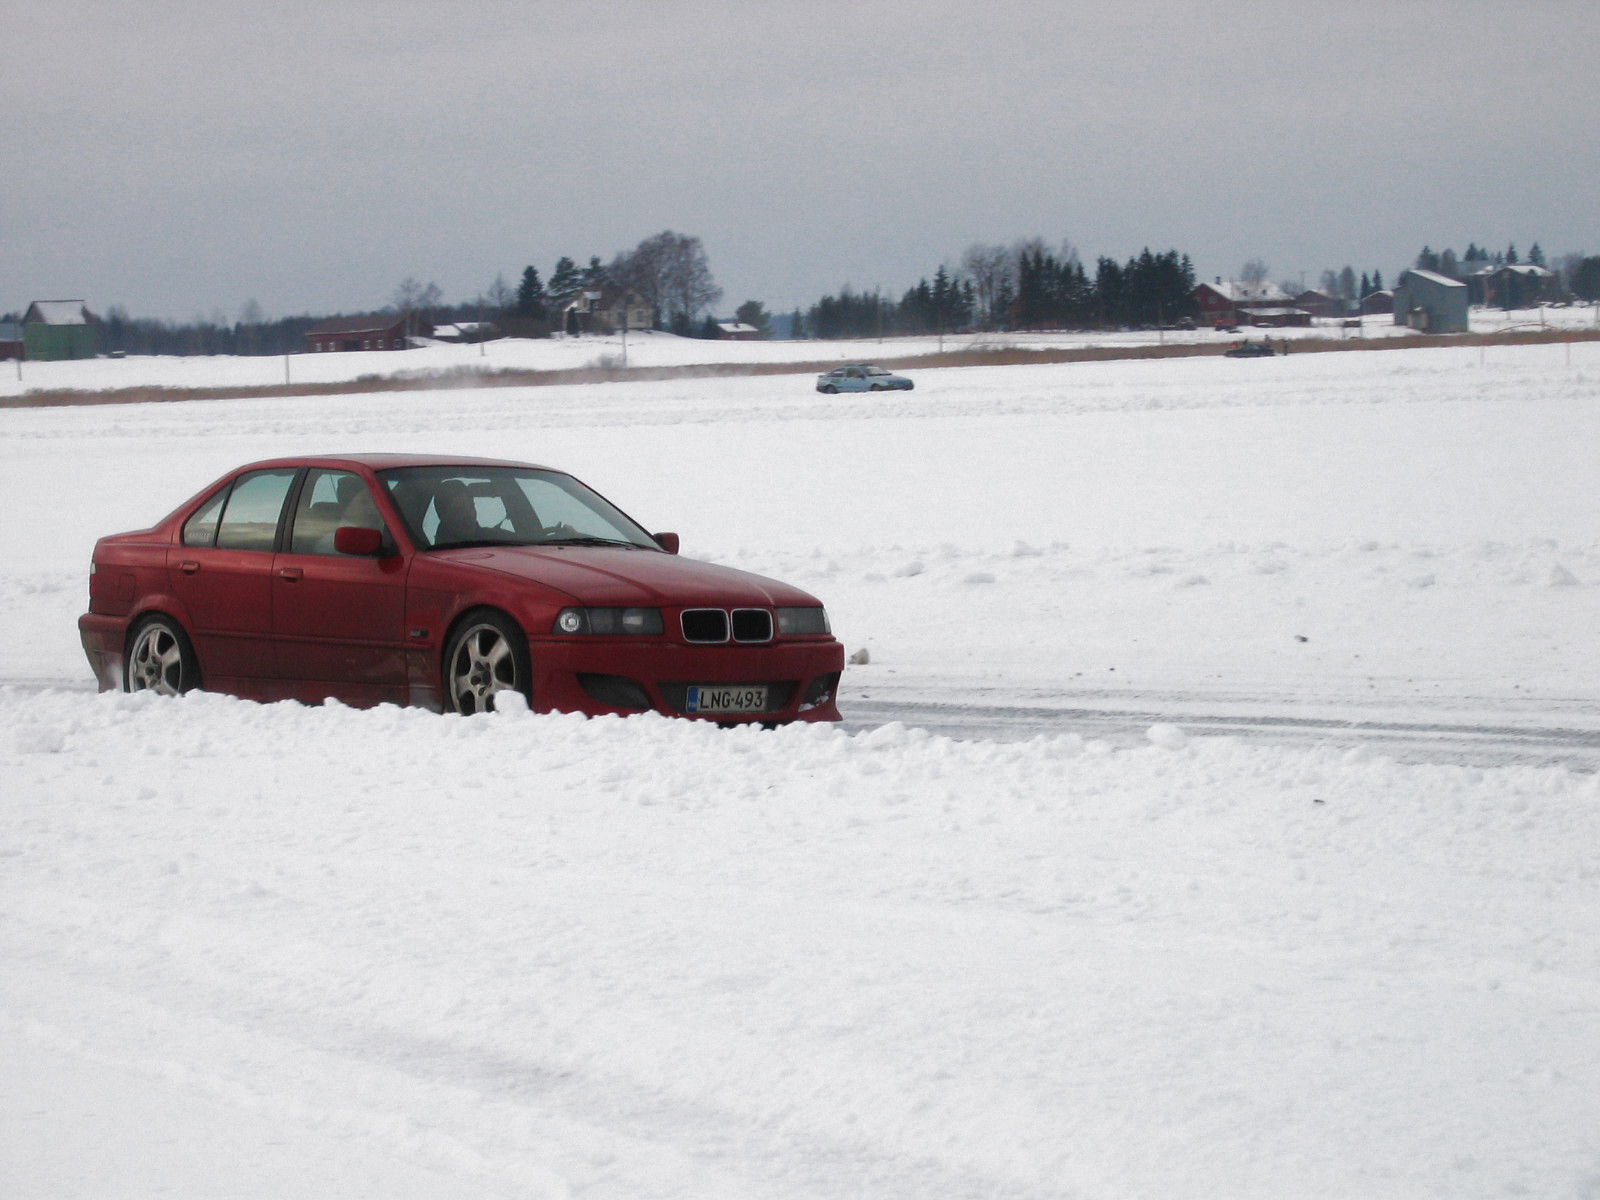 TalvipÃ¶rinÃ¤t KantelejÃ¤rvellÃ¤ 22.2.2009, Punainen BMW